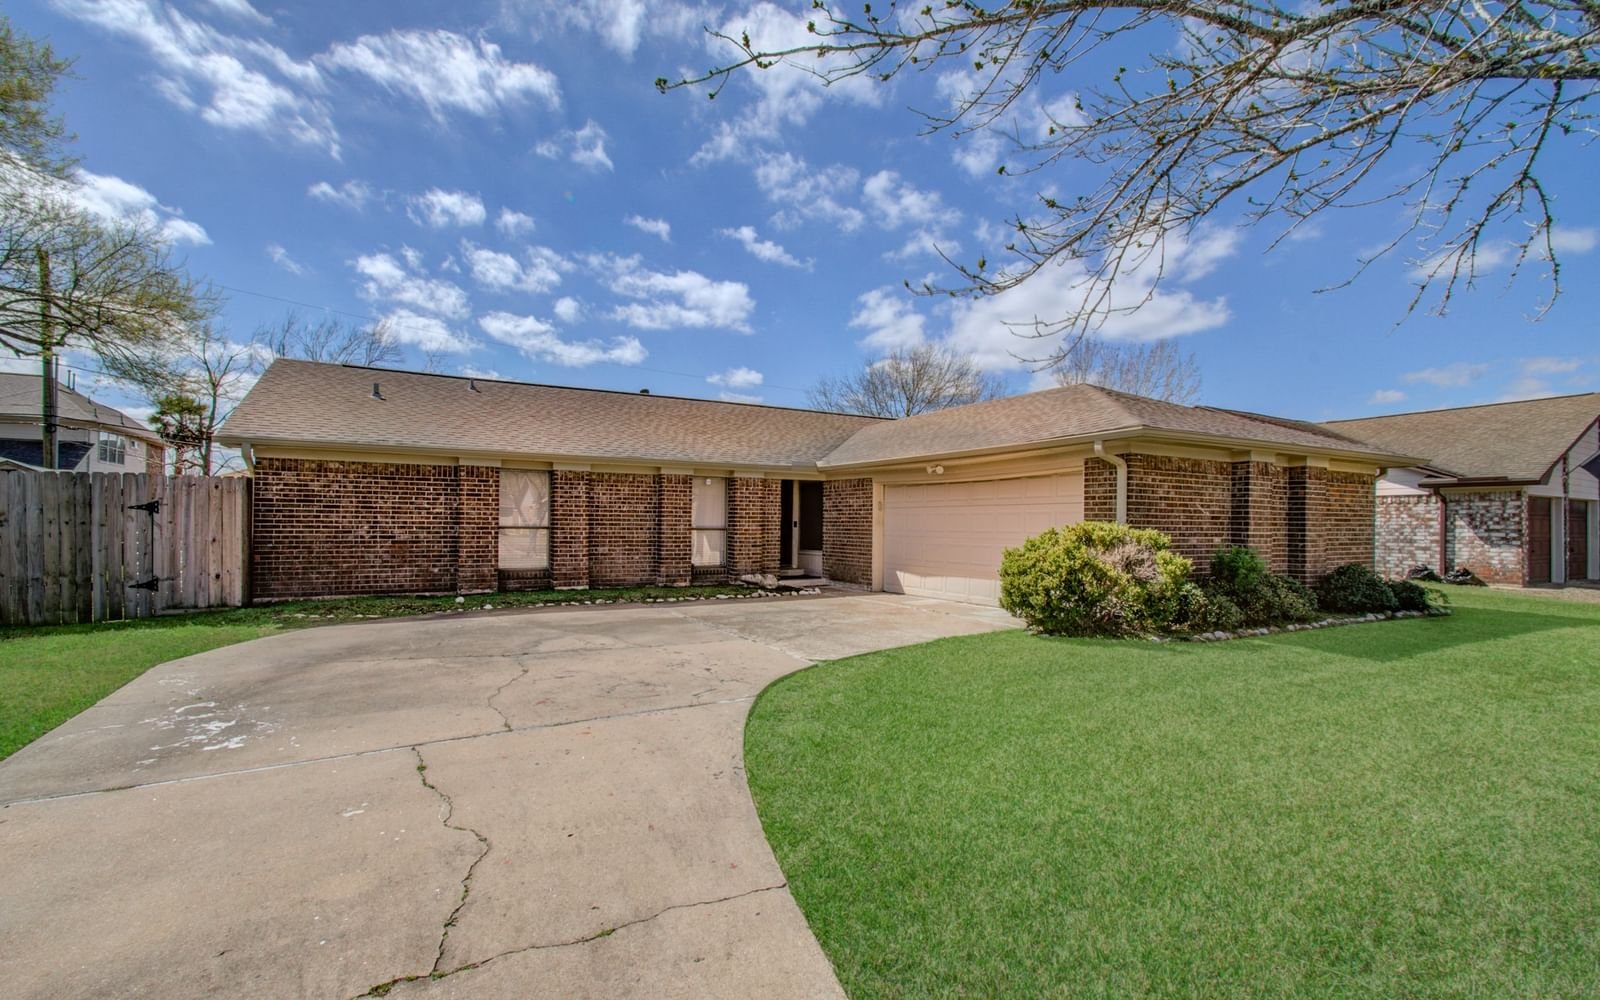 Real estate property located at 10410 Rocky Hollow, Harris, Fairmont Park Sec 02 R/P, La Porte, TX, US